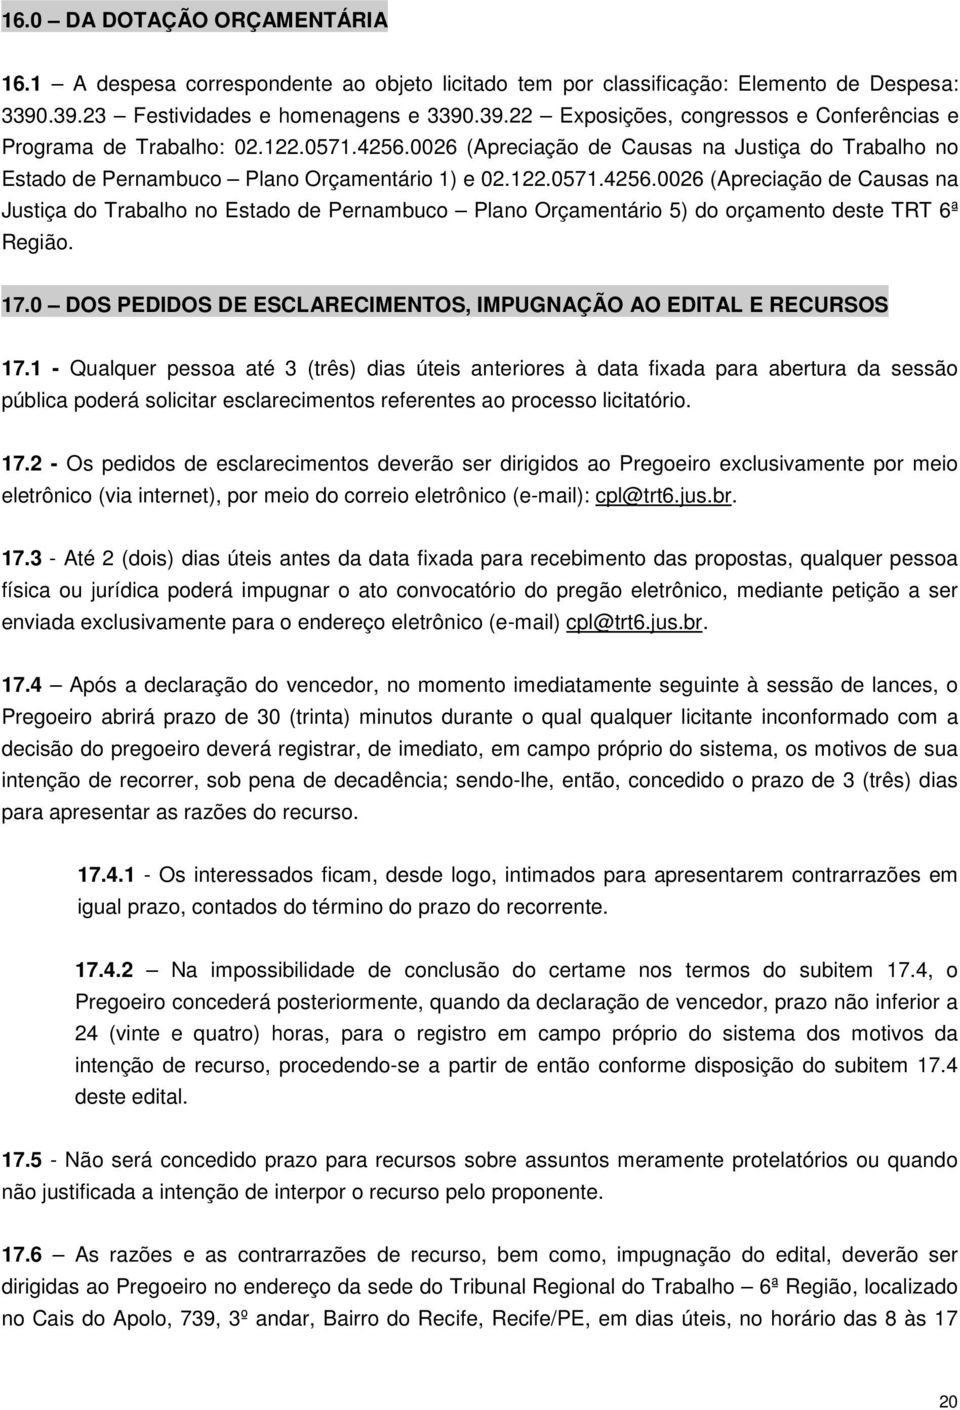 17.0 DOS PEDIDOS DE ESCLARECIMENTOS, IMPUGNAÇÃO AO EDITAL E RECURSOS 17.